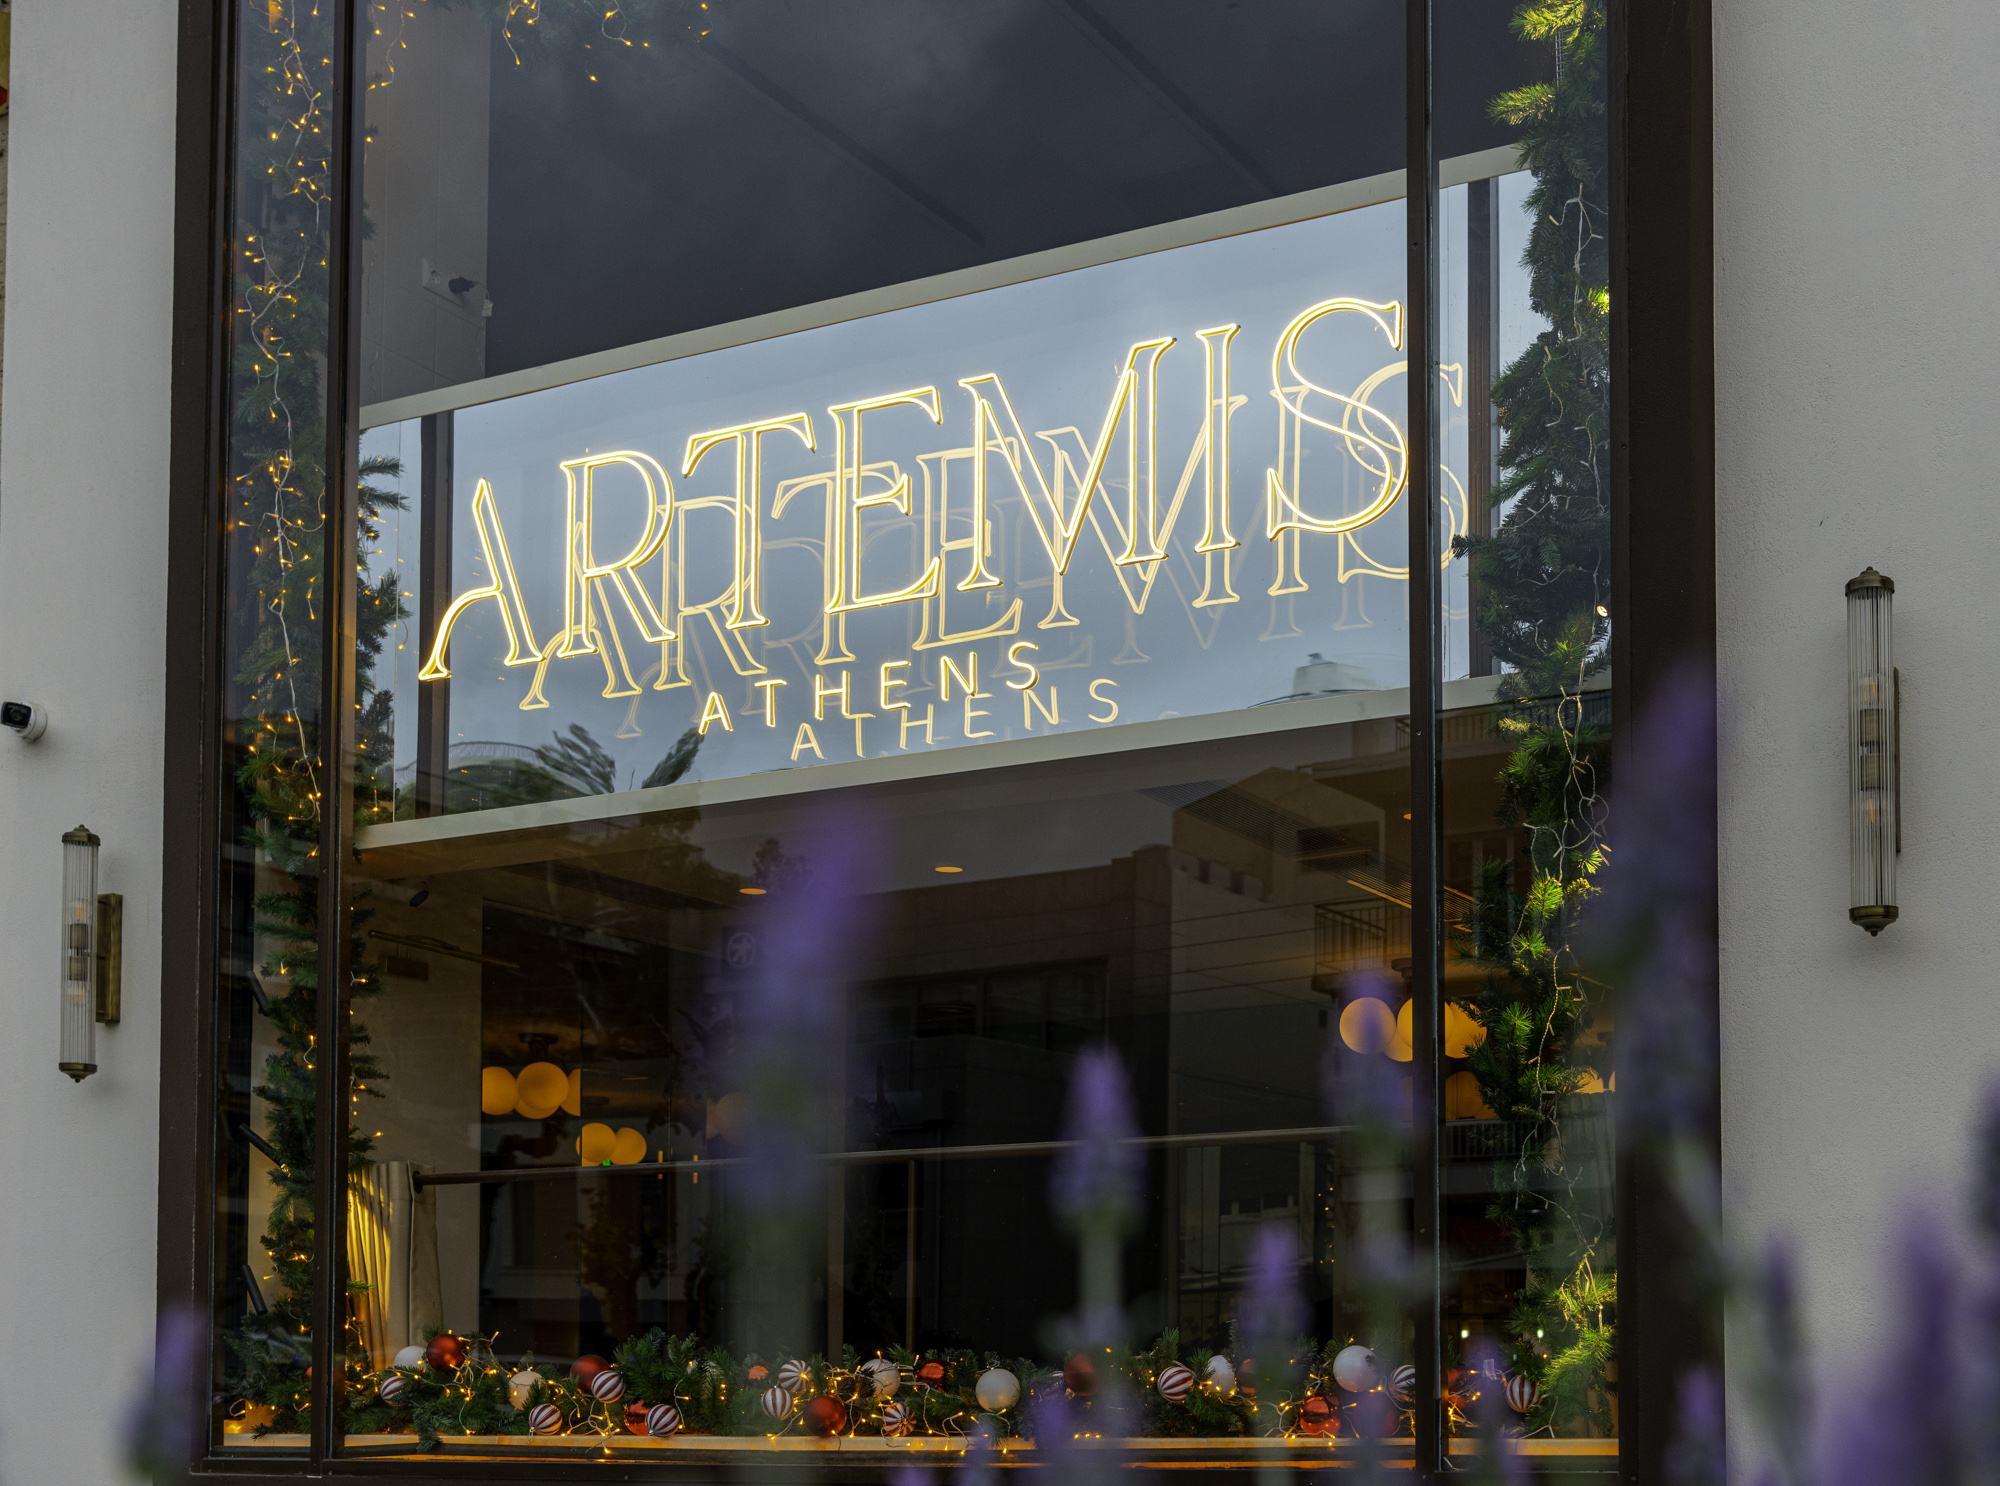 Το ιστορικό Artemis Athens Bistrot ανανεώθηκε και προσφέρει μια ολοκληρωμένη γαστρονομική εμπειρία!